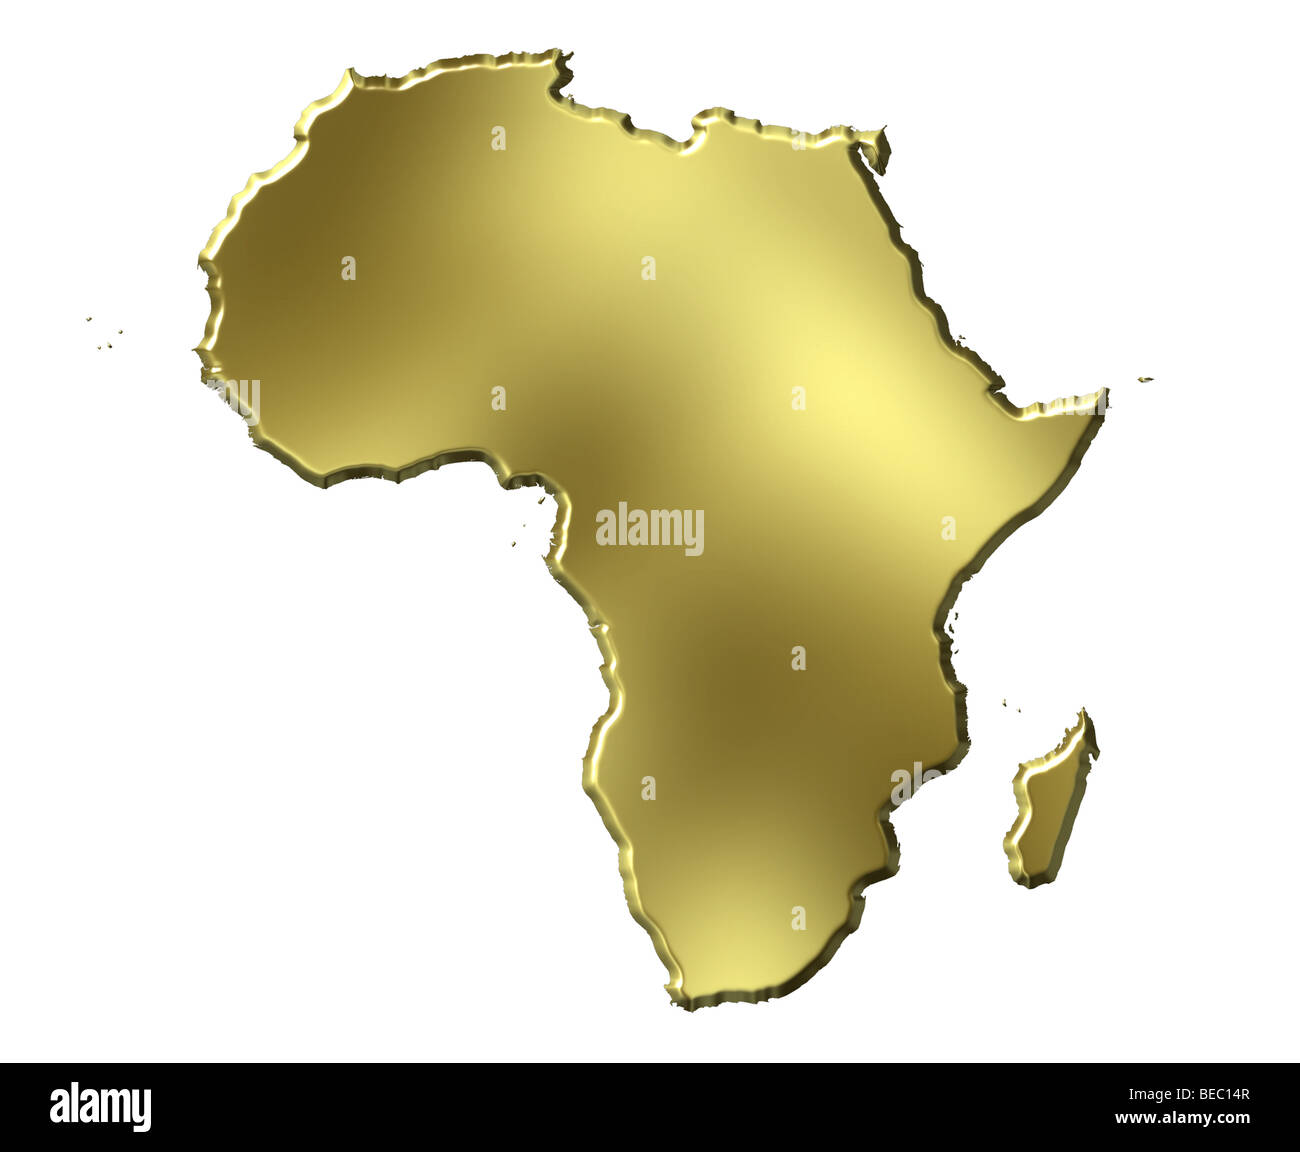 Africa 3d golden map Stock Photo